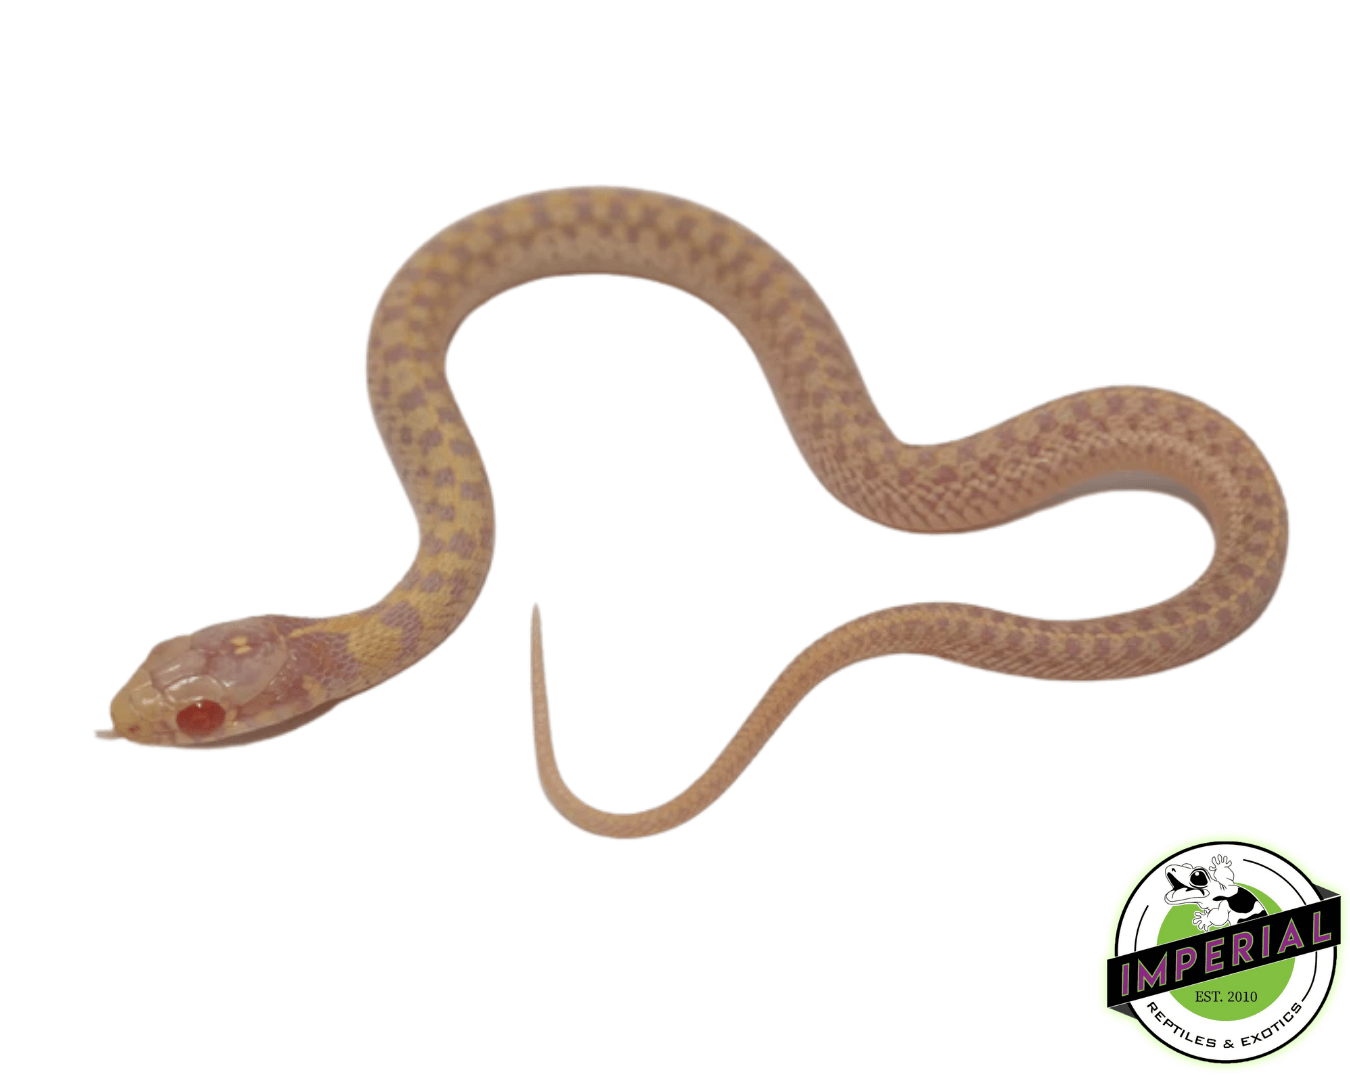 Albino checkered garter snake for sale, buy reptiles online